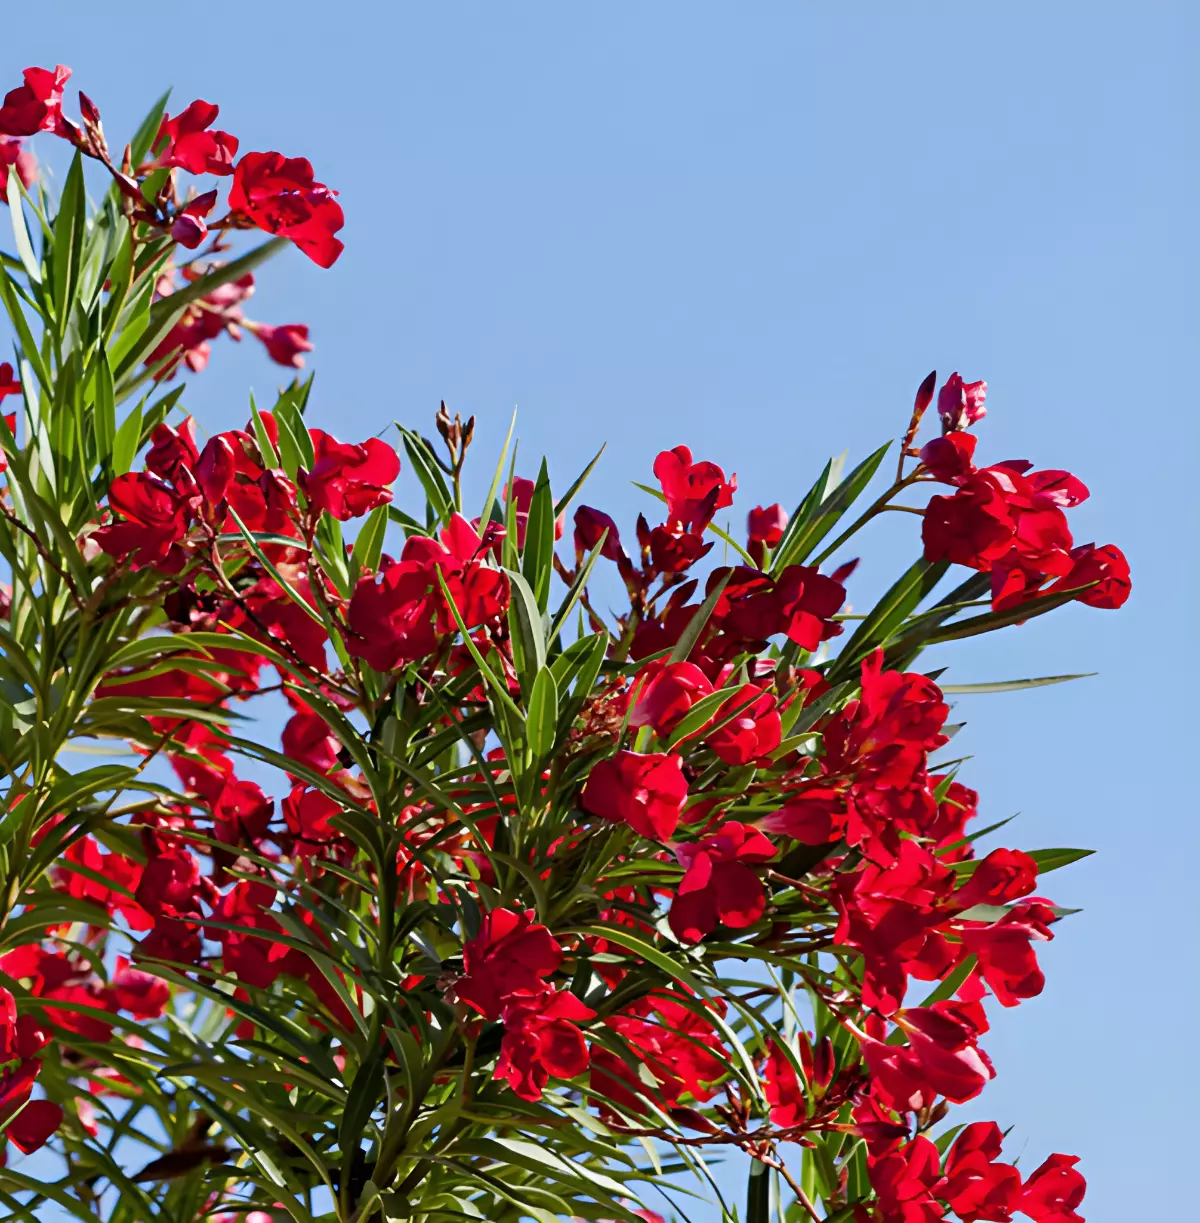 laurier rose hardy red de taille moyenne sur fond du ciel bleu en contraste avec les fleurs de couleur rouge intense